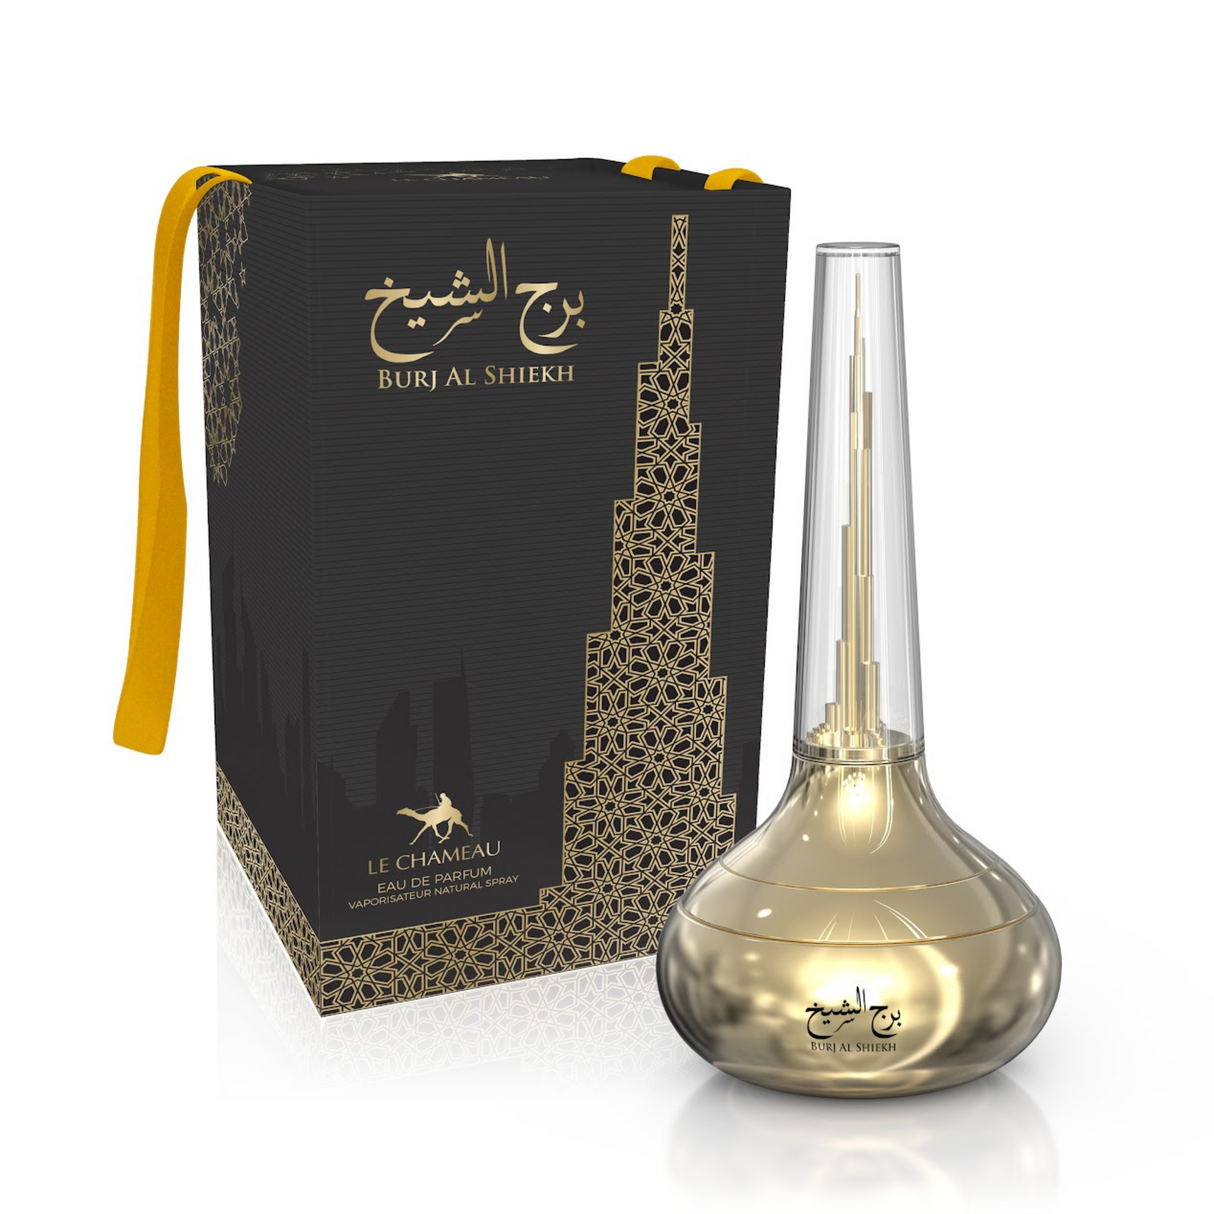 Le Chameau Burj Al Shiekh Eau de Parfum - 100ml